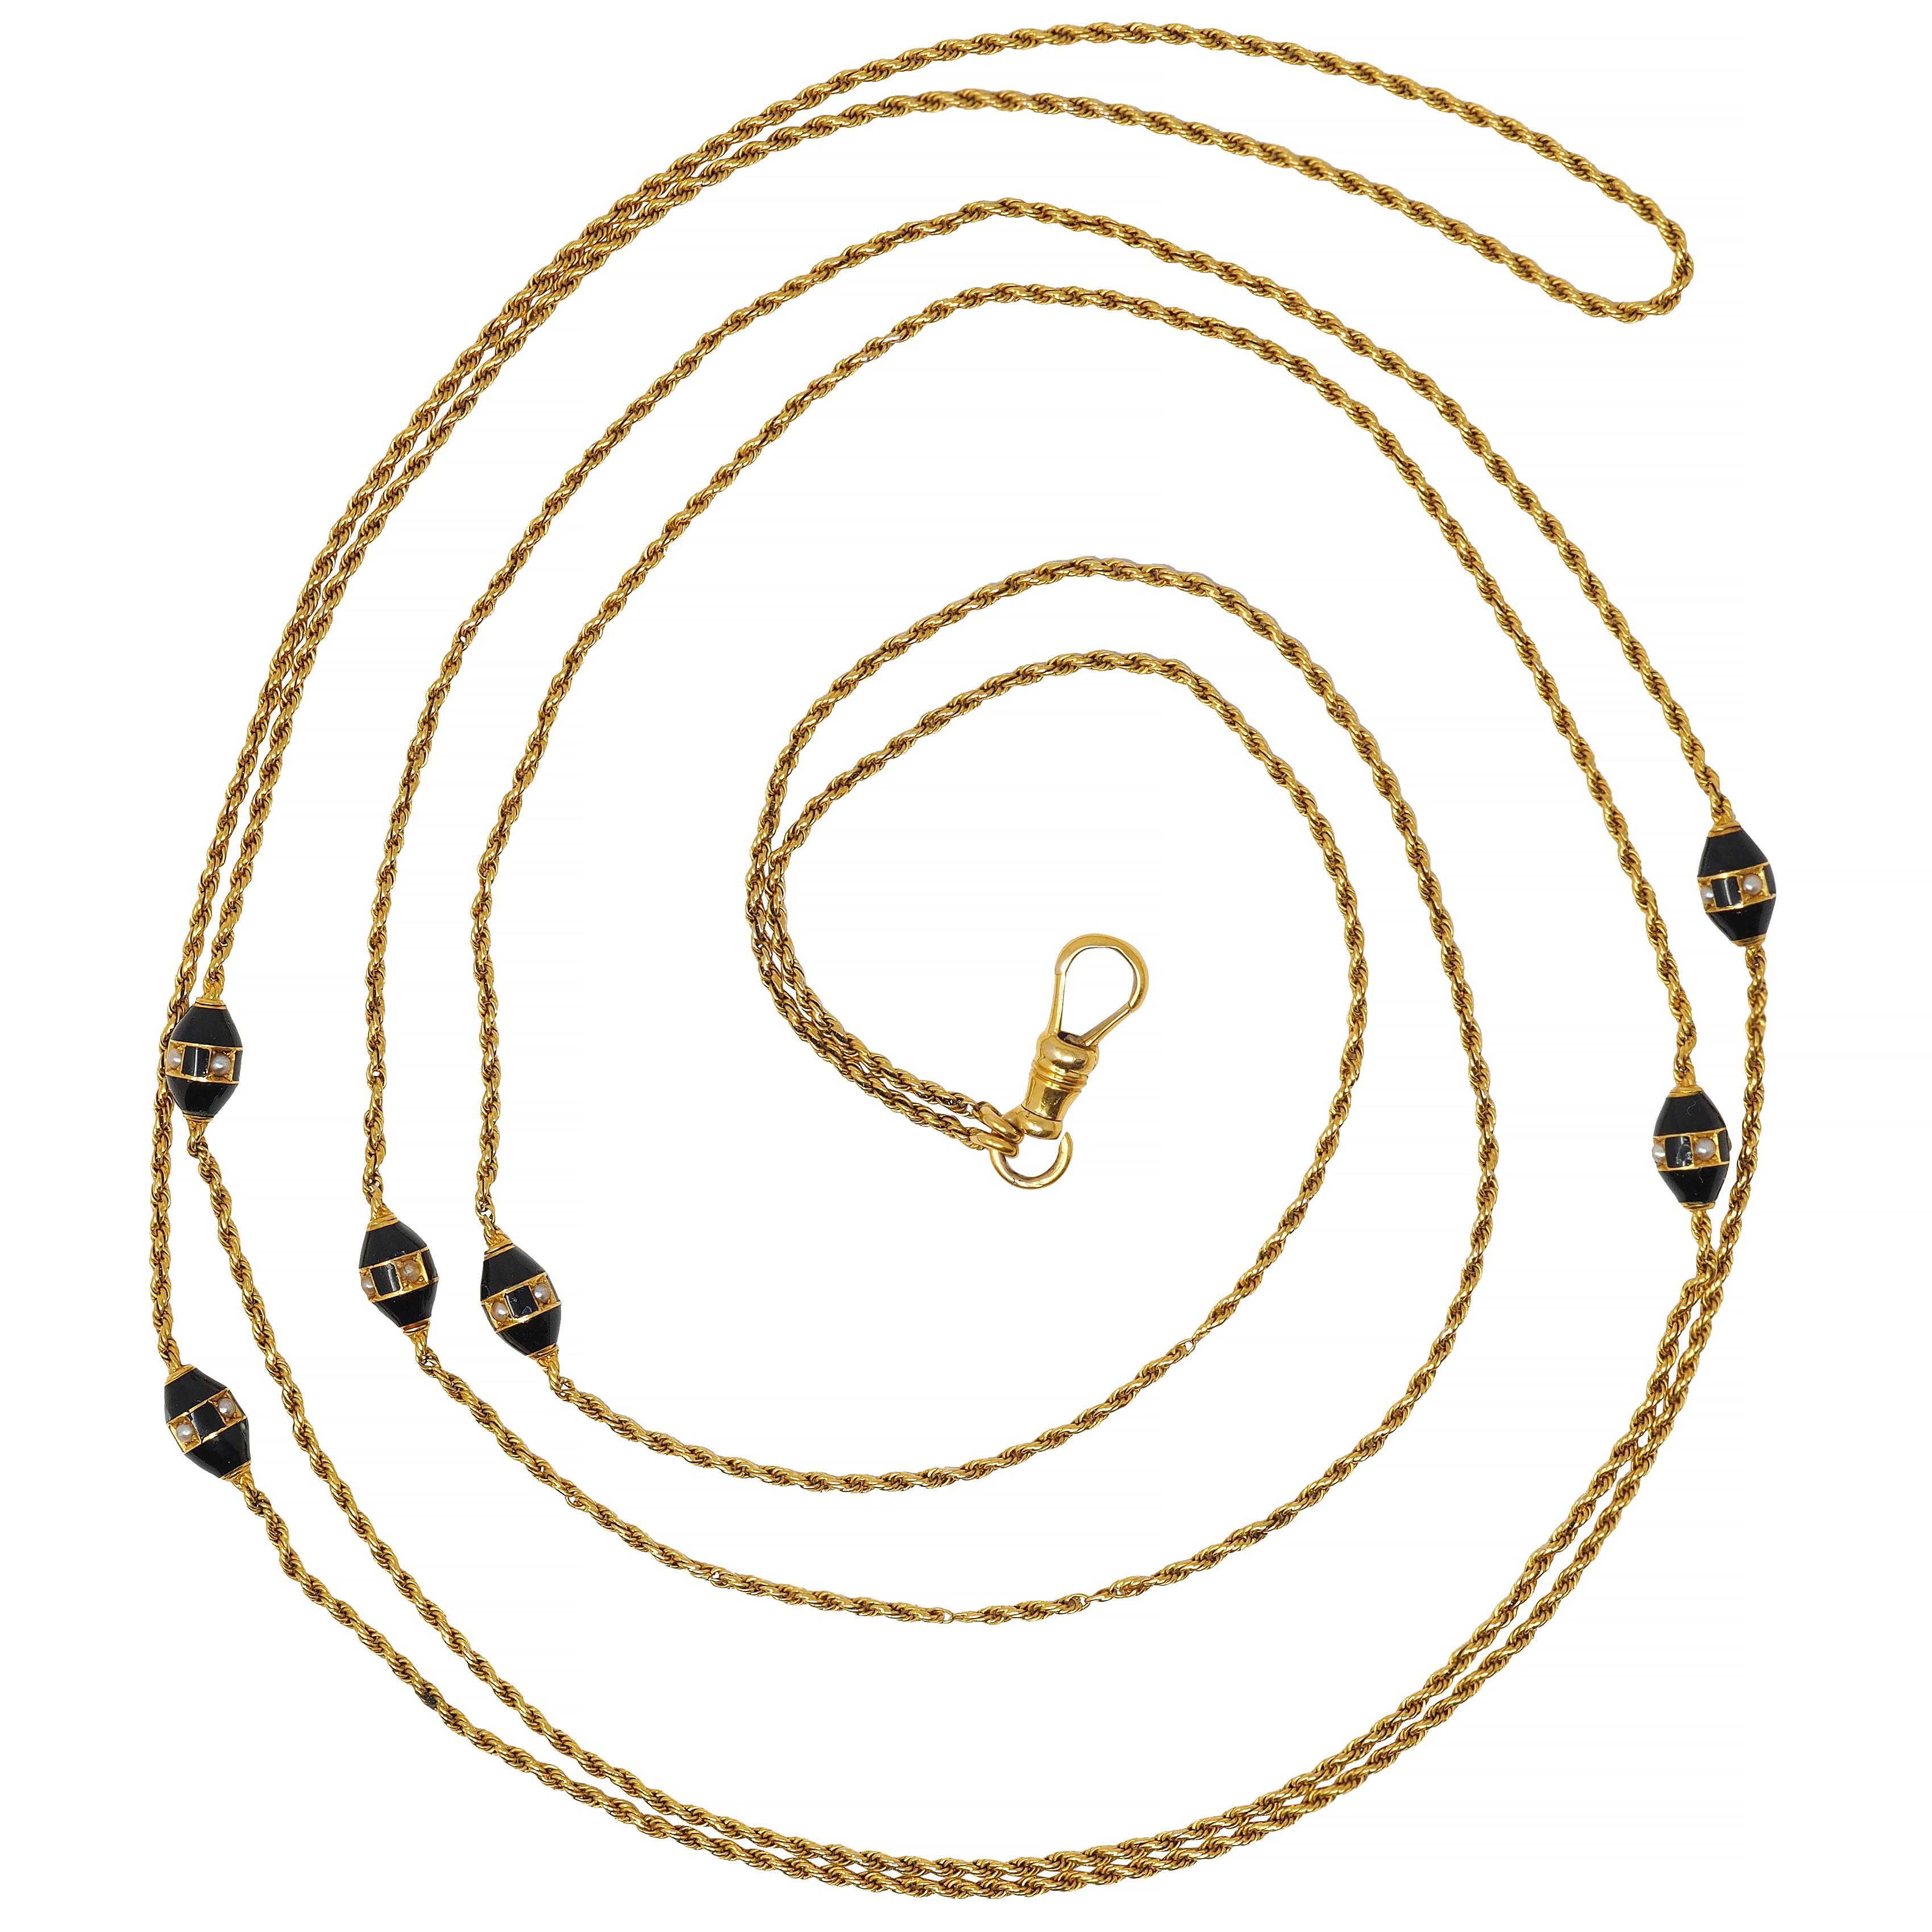 Entworfen als 1,5 mm Seilkette mit sechs ovalen Perlenstationen 
Glänzend mit undurchsichtiger schwarzer Emaille durchgehend 
In der Mitte ein abwechselndes Muster aus Emaille und Saatperlen
1,5 mm runde Perlen - gefasst in goldene Quadrate